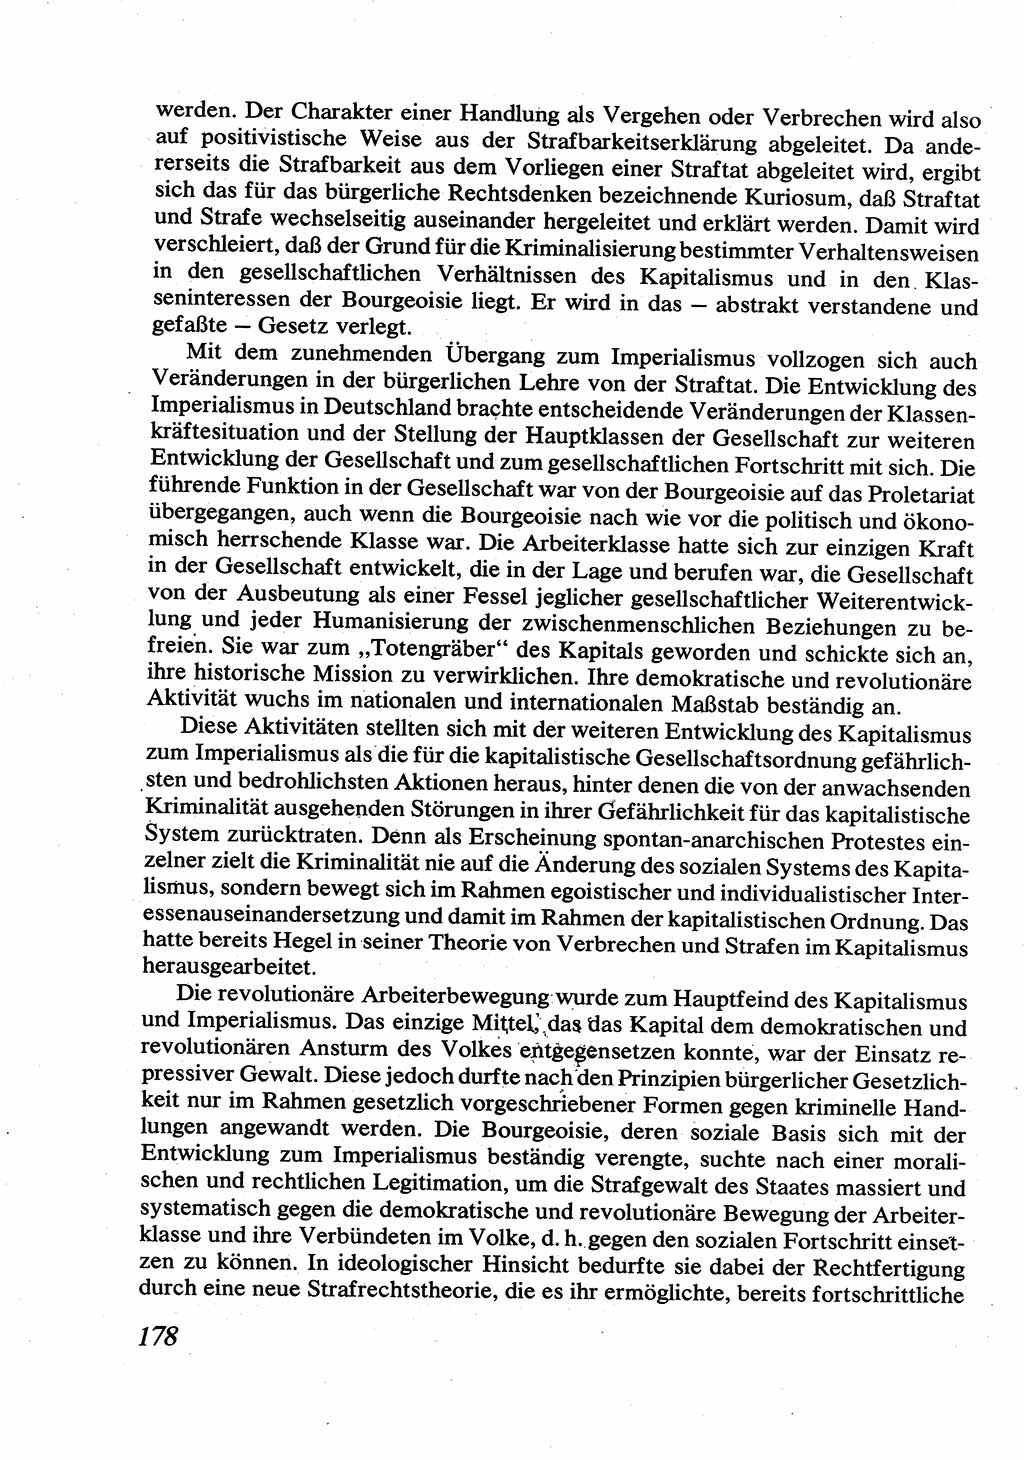 Strafrecht [Deutsche Demokratische Republik (DDR)], Allgemeiner Teil, Lehrbuch 1976, Seite 178 (Strafr. DDR AT Lb. 1976, S. 178)